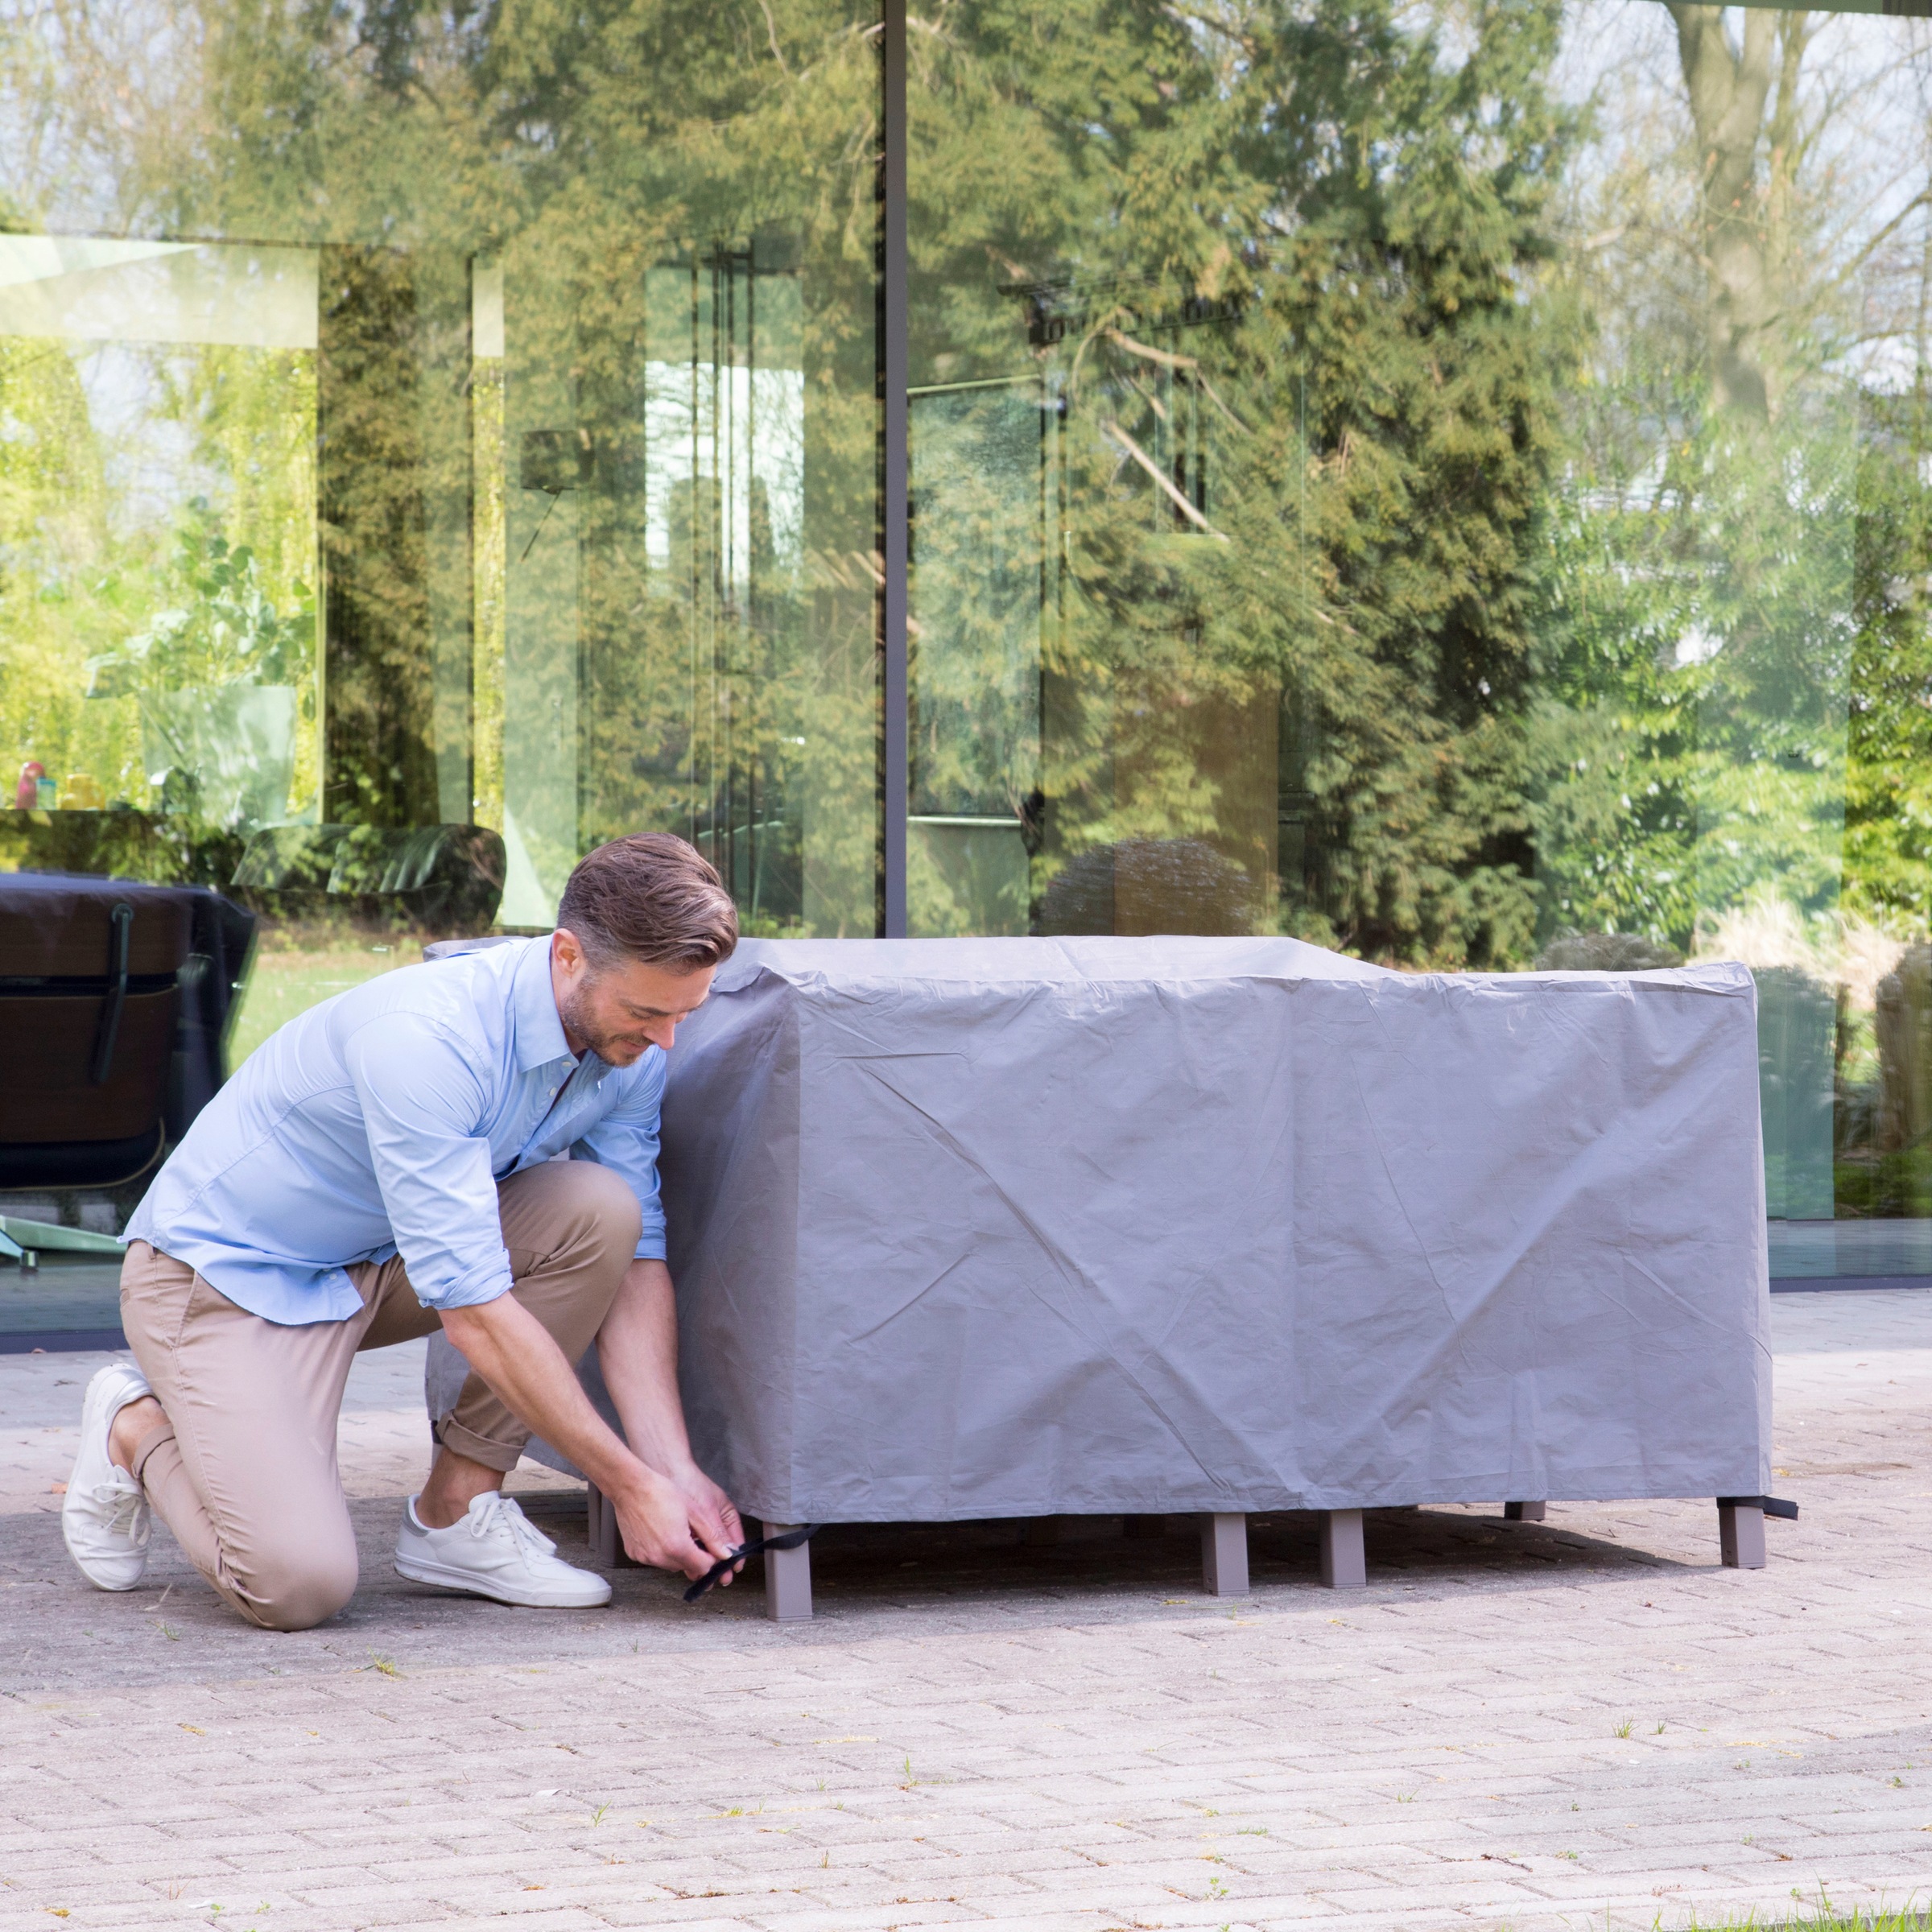 winza outdoor covers Gartenmöbel-Schutzhülle, geeignet für ein kleines Loungeset, Länge: 150 cm